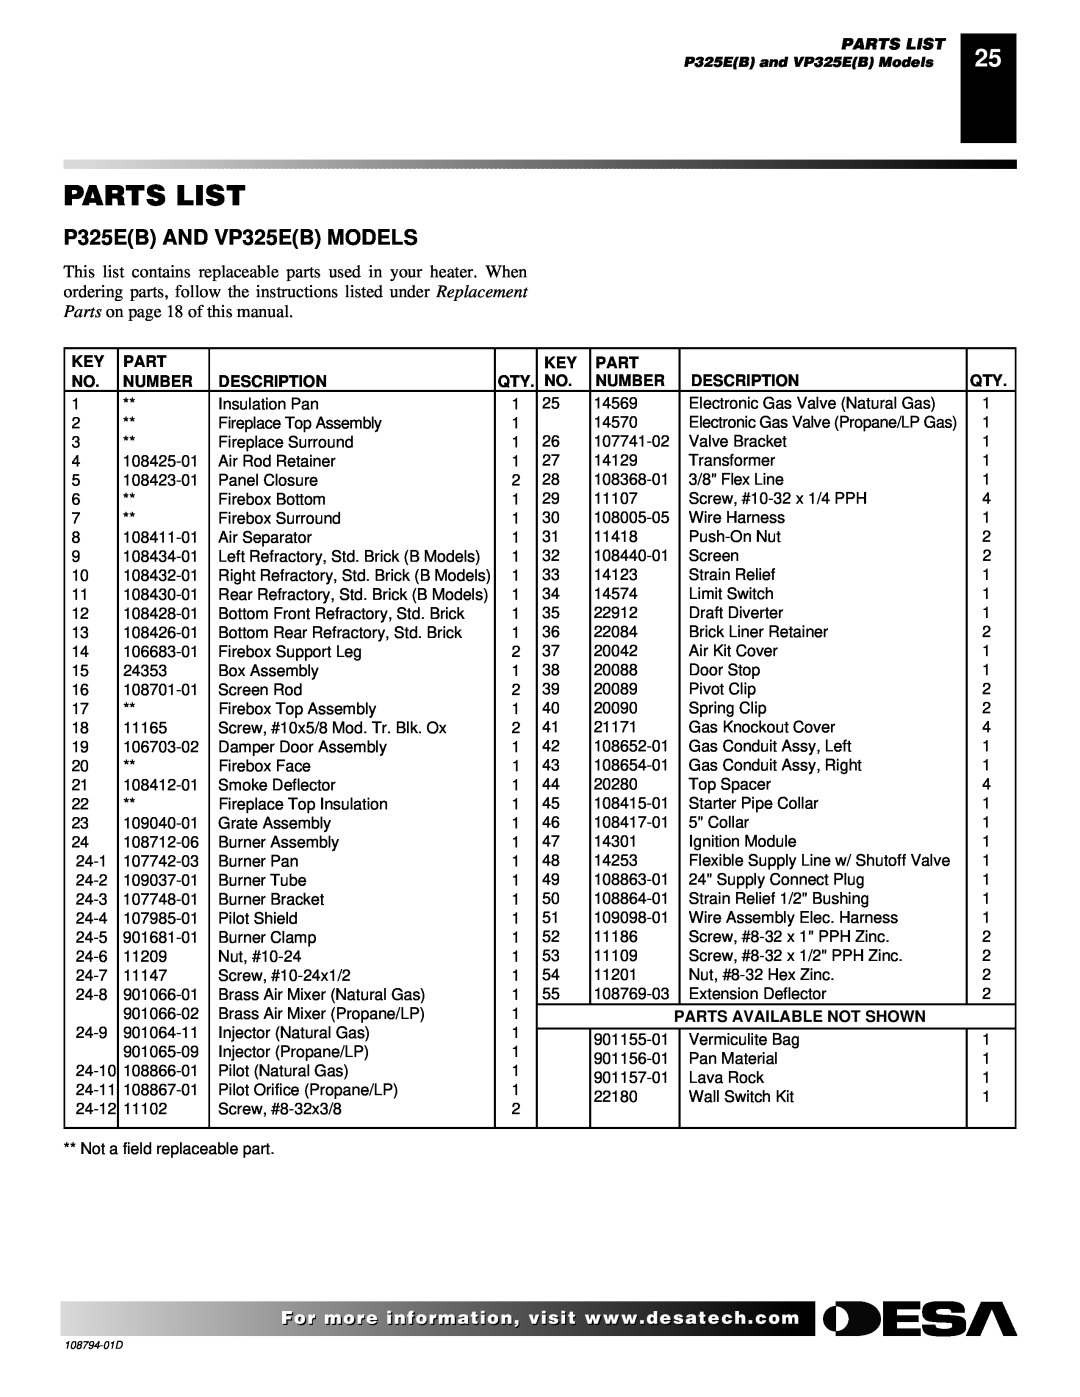 Desa VP325E(B) installation manual Parts List, Number, Description, Parts Available Not Shown 